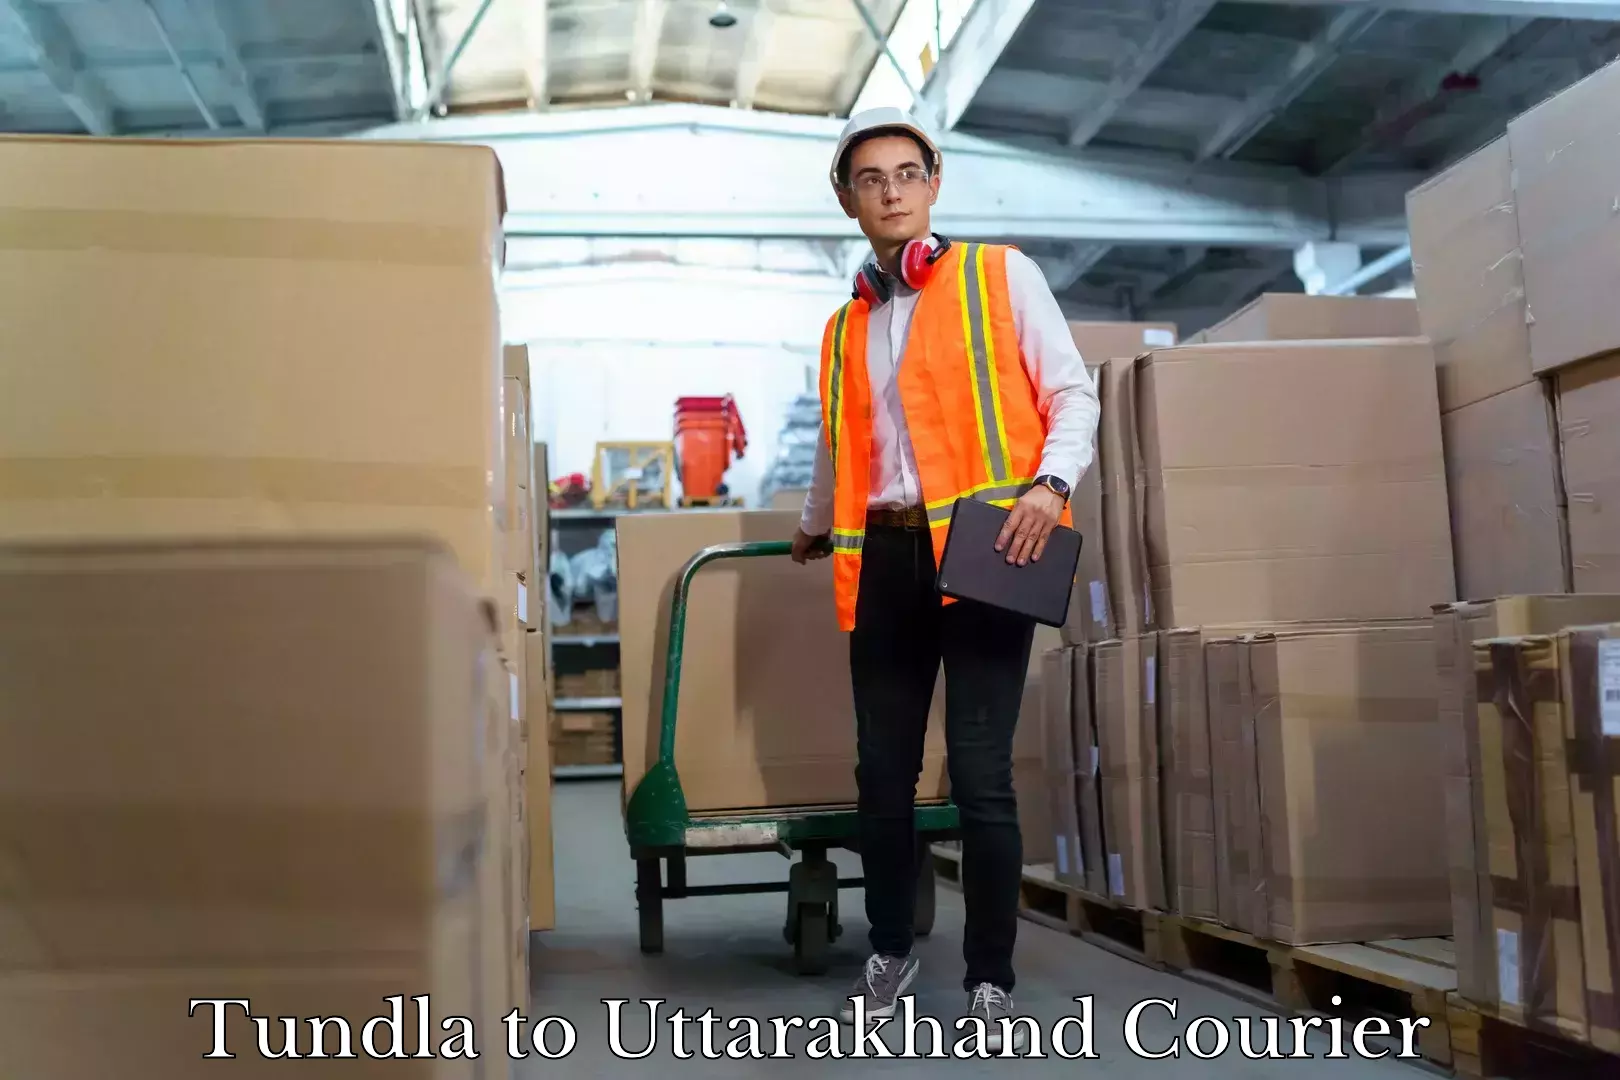 Furniture transport company Tundla to Uttarakhand